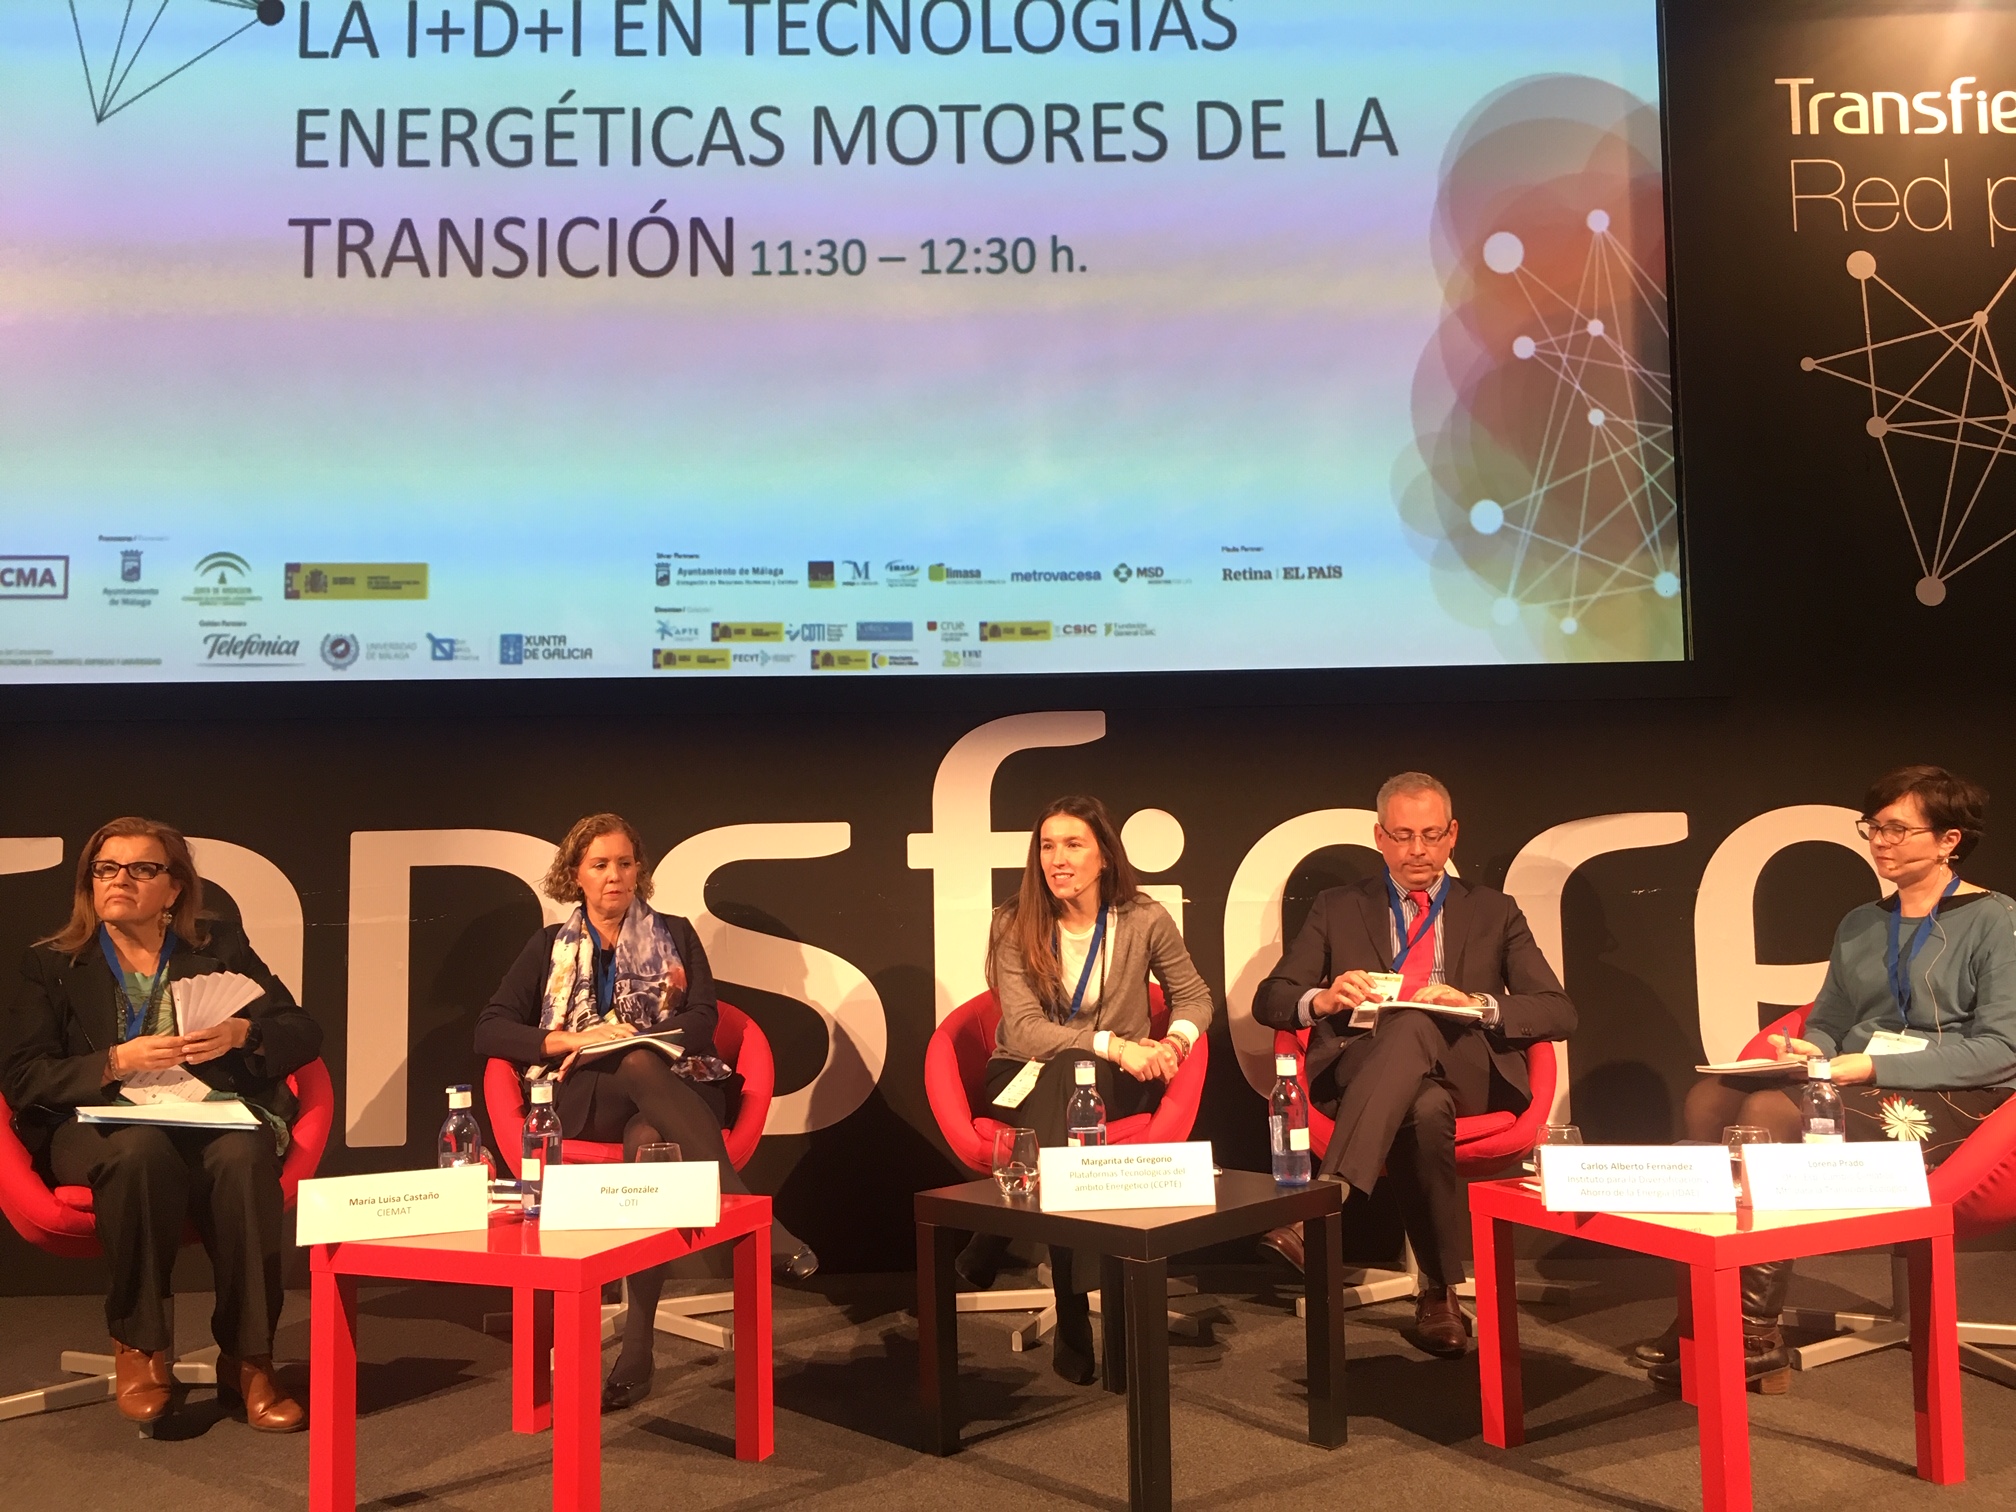 (Español) BIOPLAT y GEOPLAT participan en la Mesa Redona ‘La I+D+i en las tecnologías energéticas motores de la transición’ en TRANSFIERE 2019